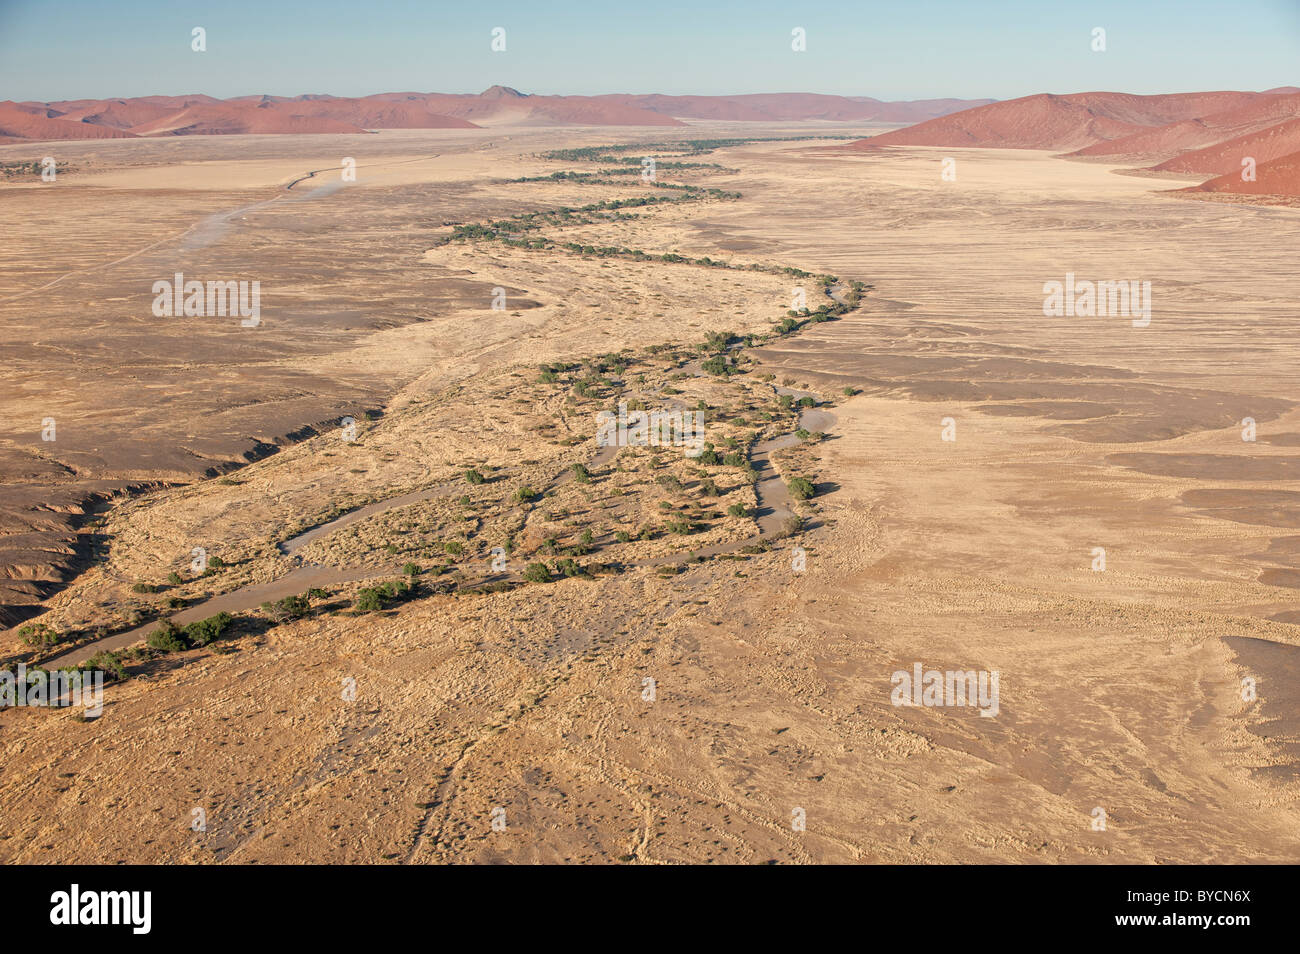 Le Canyon de la rivière Tsauchab, avec les dunes de sable rouge près de Sossusvlei, le parc de Namib Naukluft, centre de la Namibie. Banque D'Images